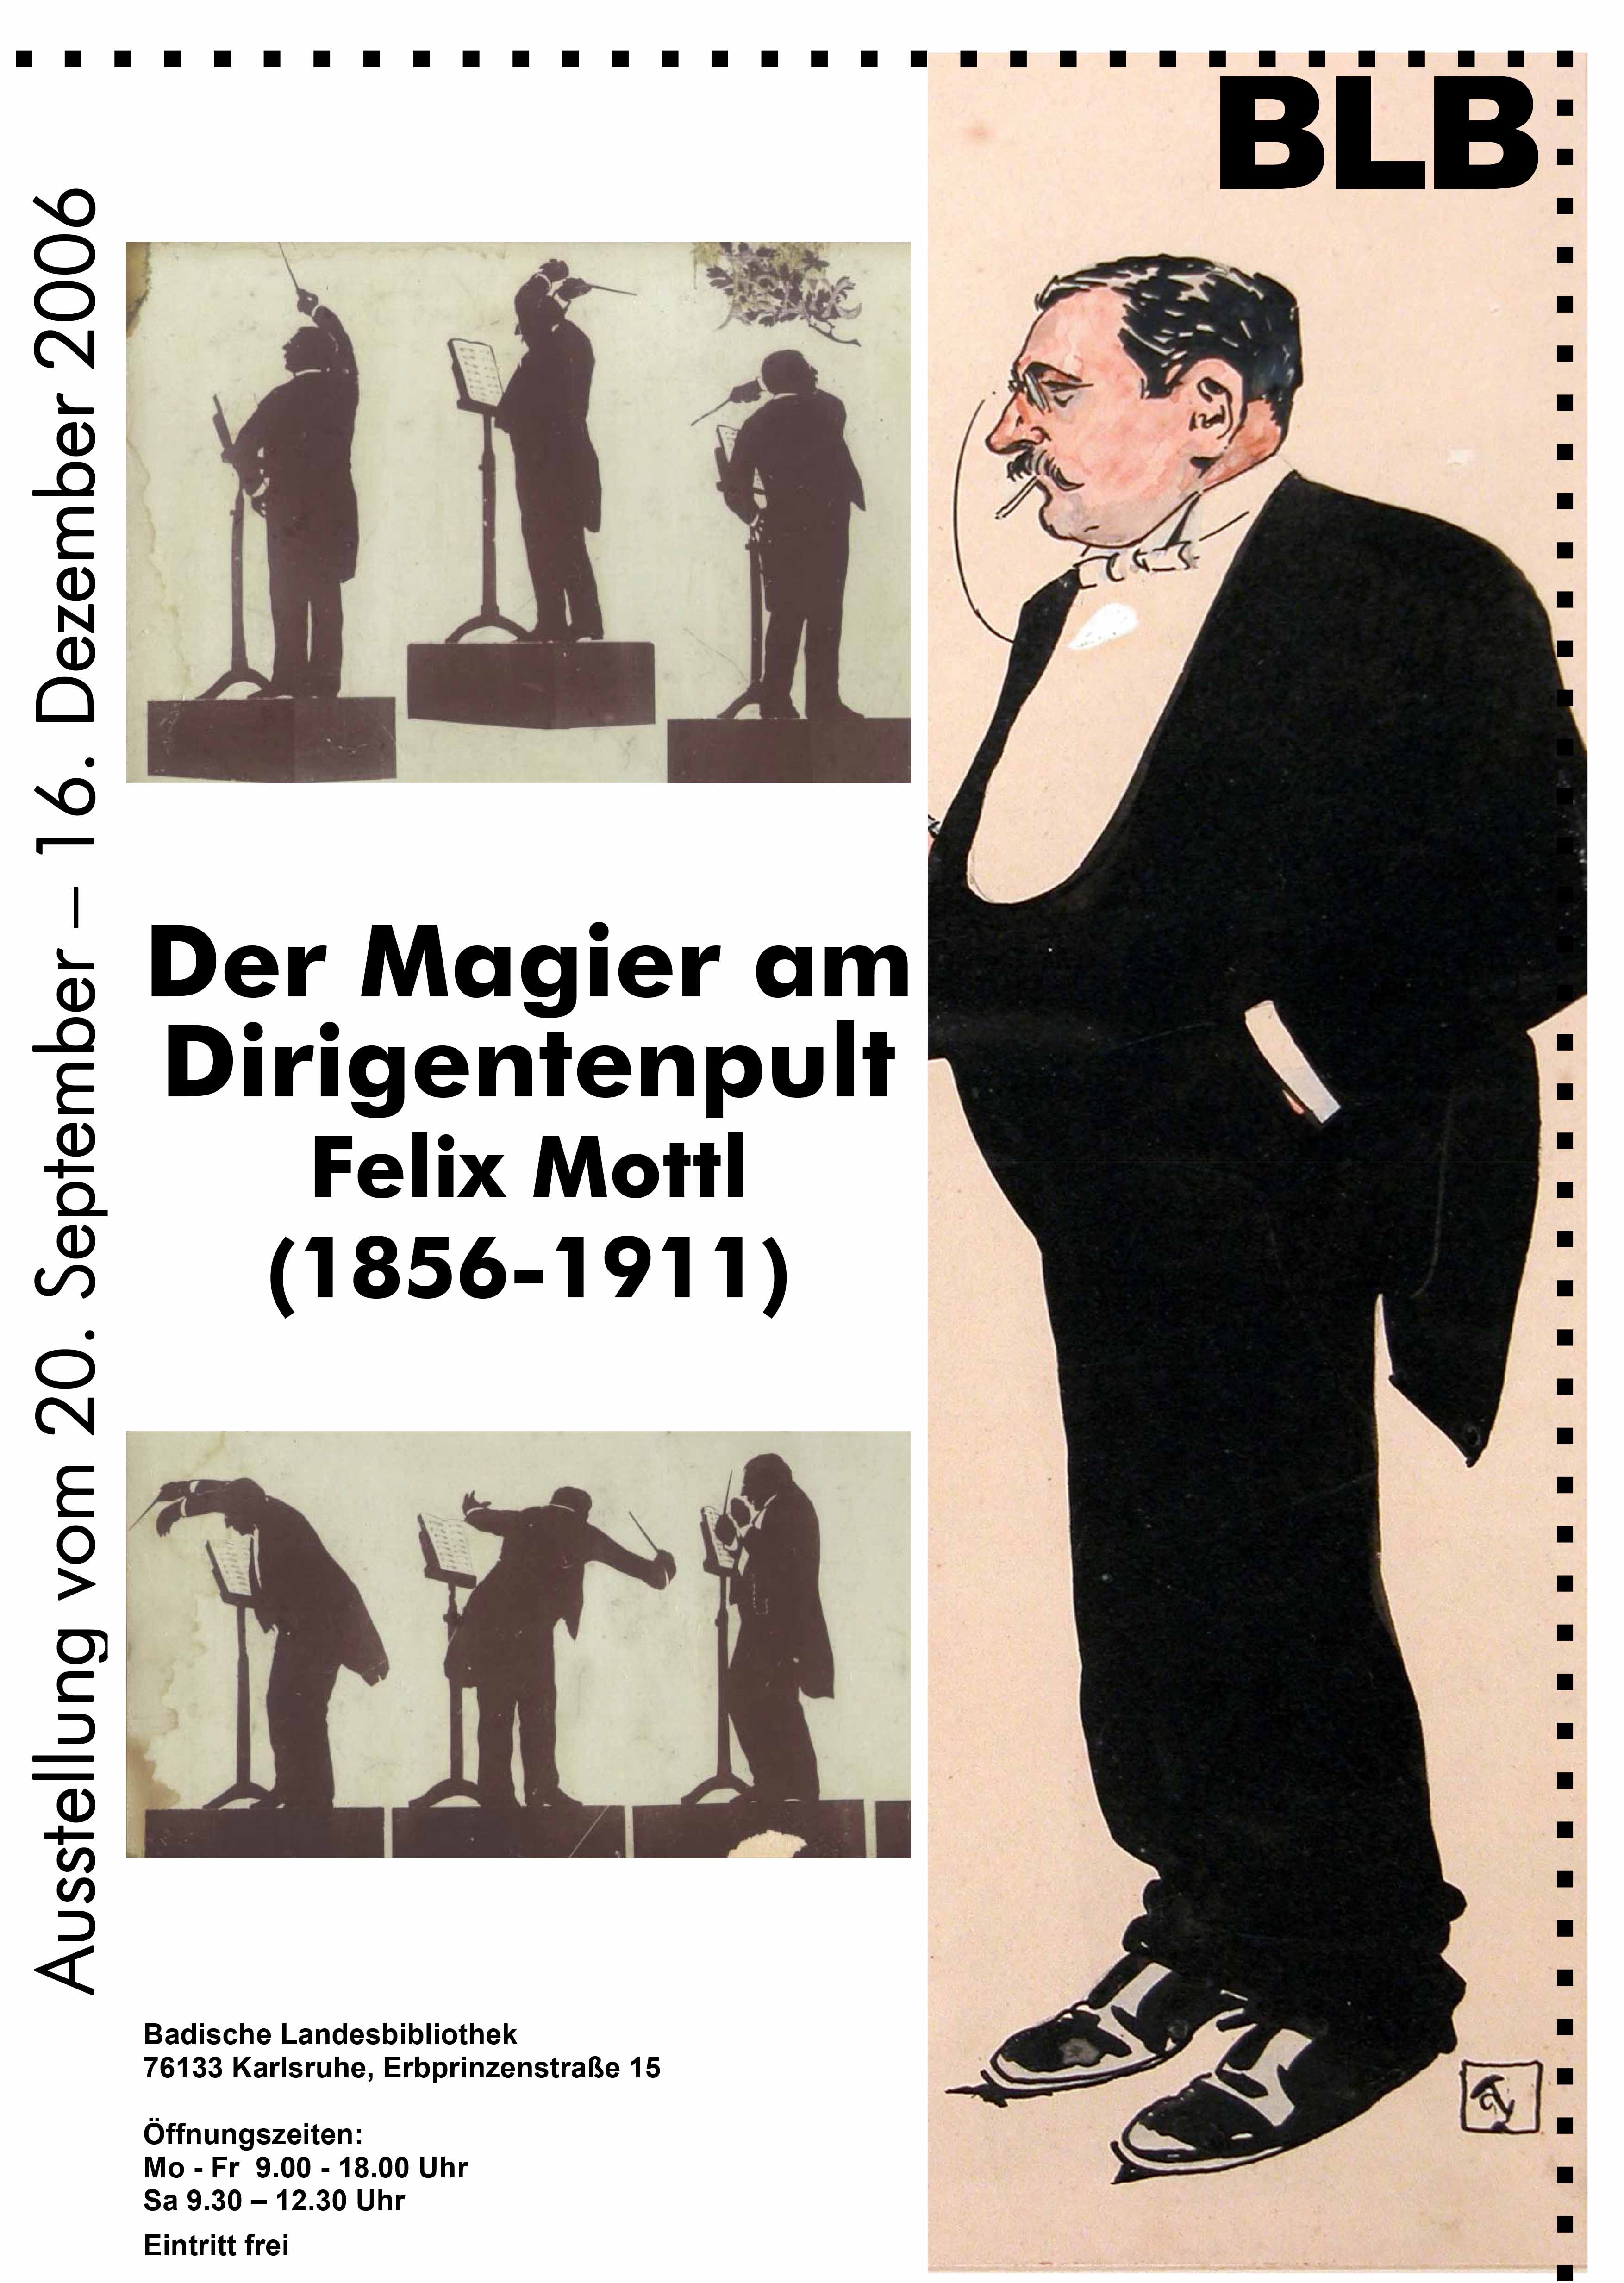 Das Plakat zeigt verschiedene Scherenschnitte mit Dirigierbewegungen von Mottl, wie auch eine Zeichnung von ihm. Dazu Textinformationen zur Ausstellung